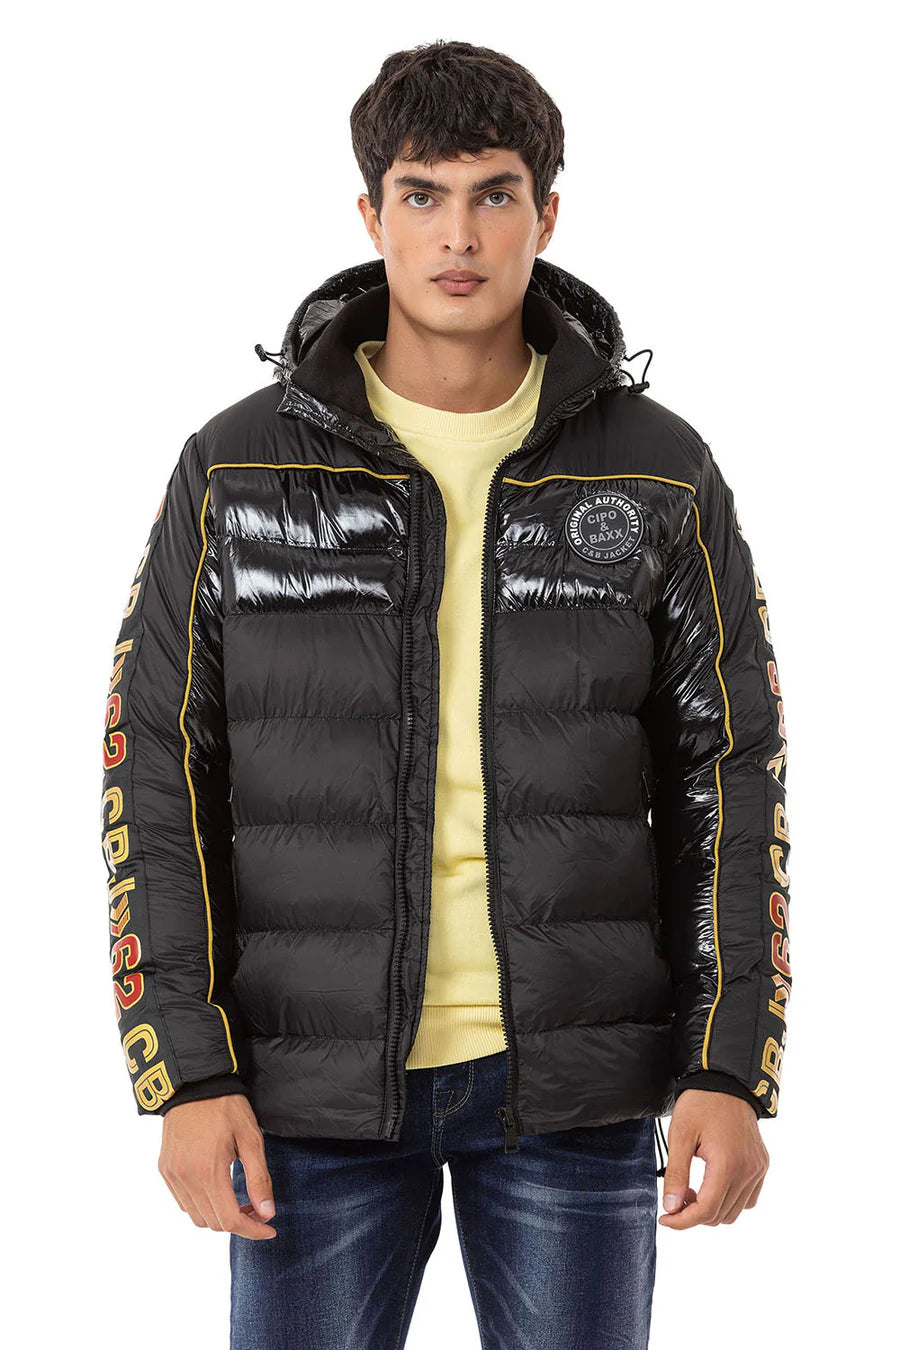 CM218 men's winter jacket